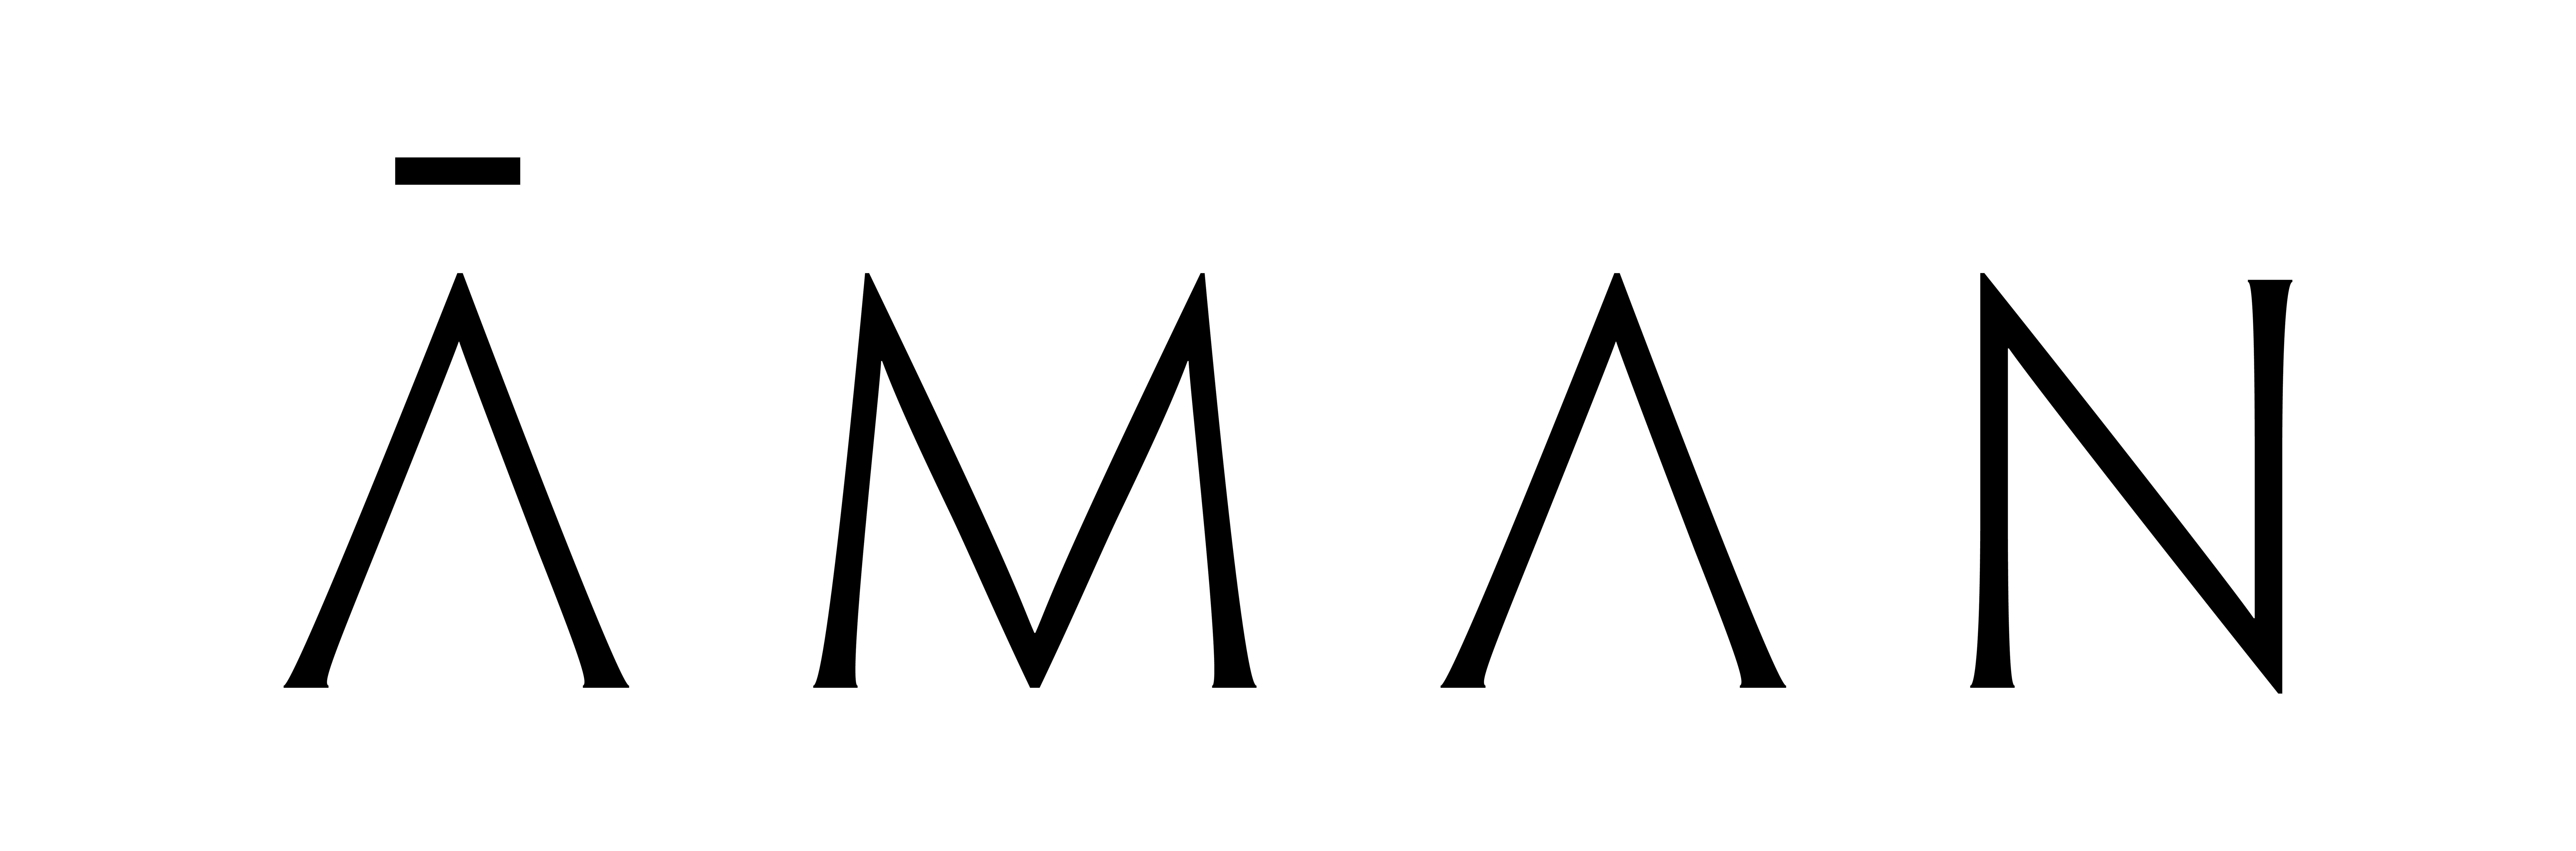 Aman Logo - File:Aman logo and branding.jpg